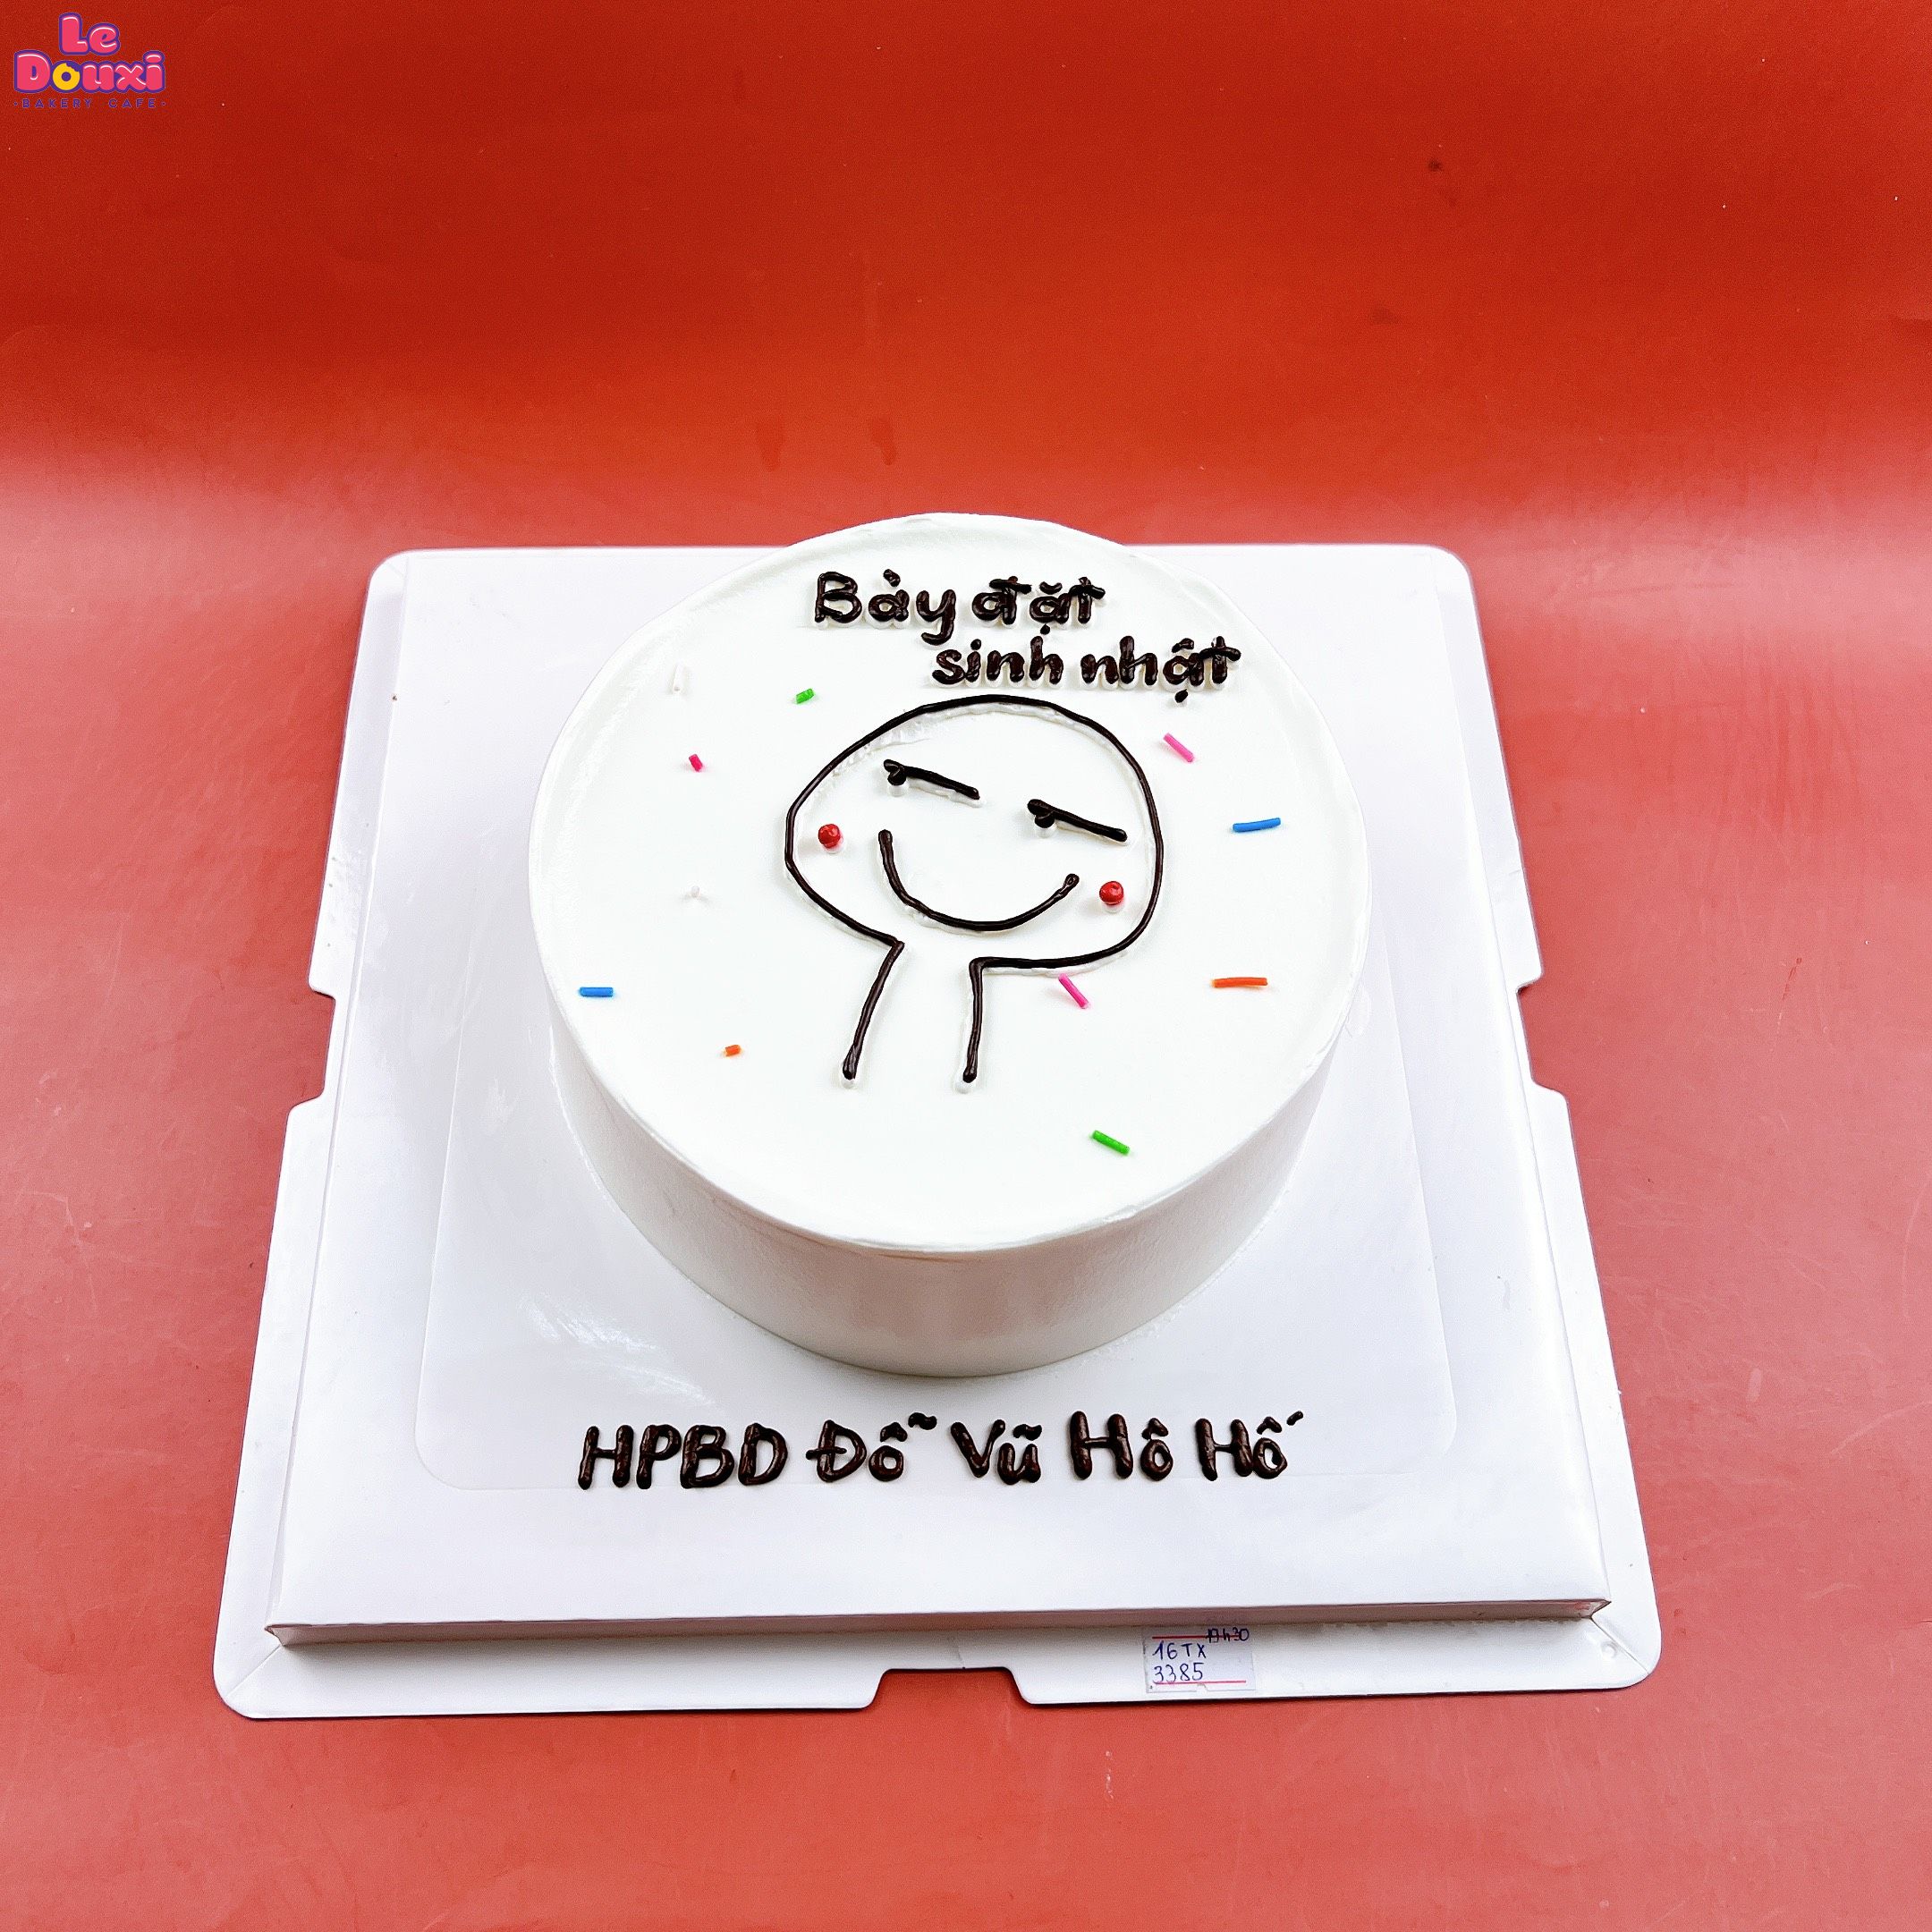 Bánh kem thiết kế theo yêu cầu mừng sinh nhật sếp - Tiệm Bánh Mon Chéri |  Bánh kem dễ thương